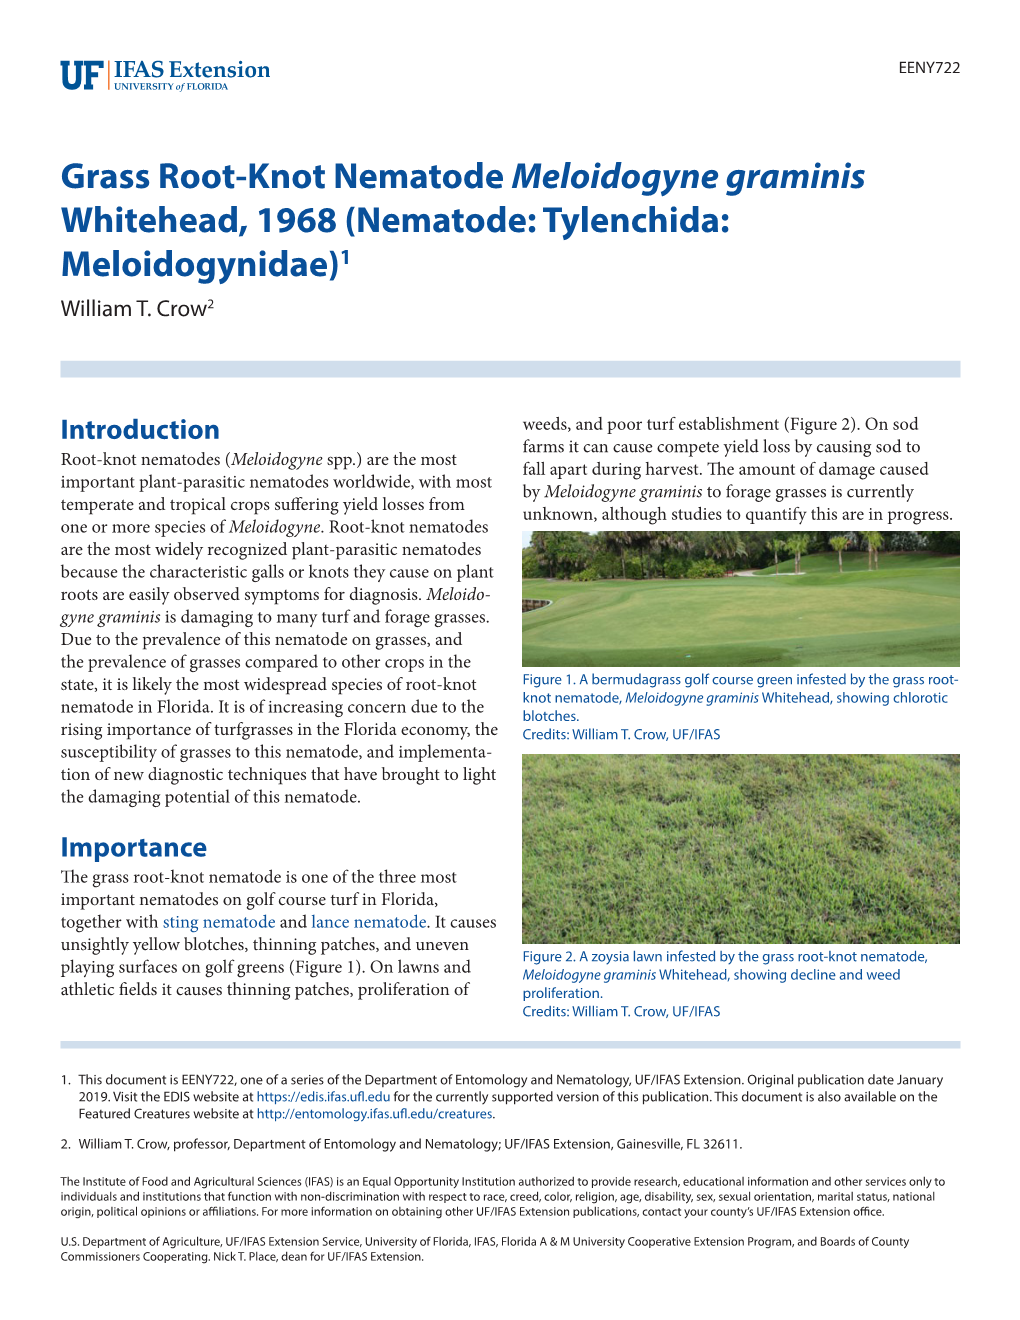 Grass Root-Knot Nematode Meloidogyne Graminis Whitehead, 1968 (Nematode: Tylenchida: Meloidogynidae)1 William T